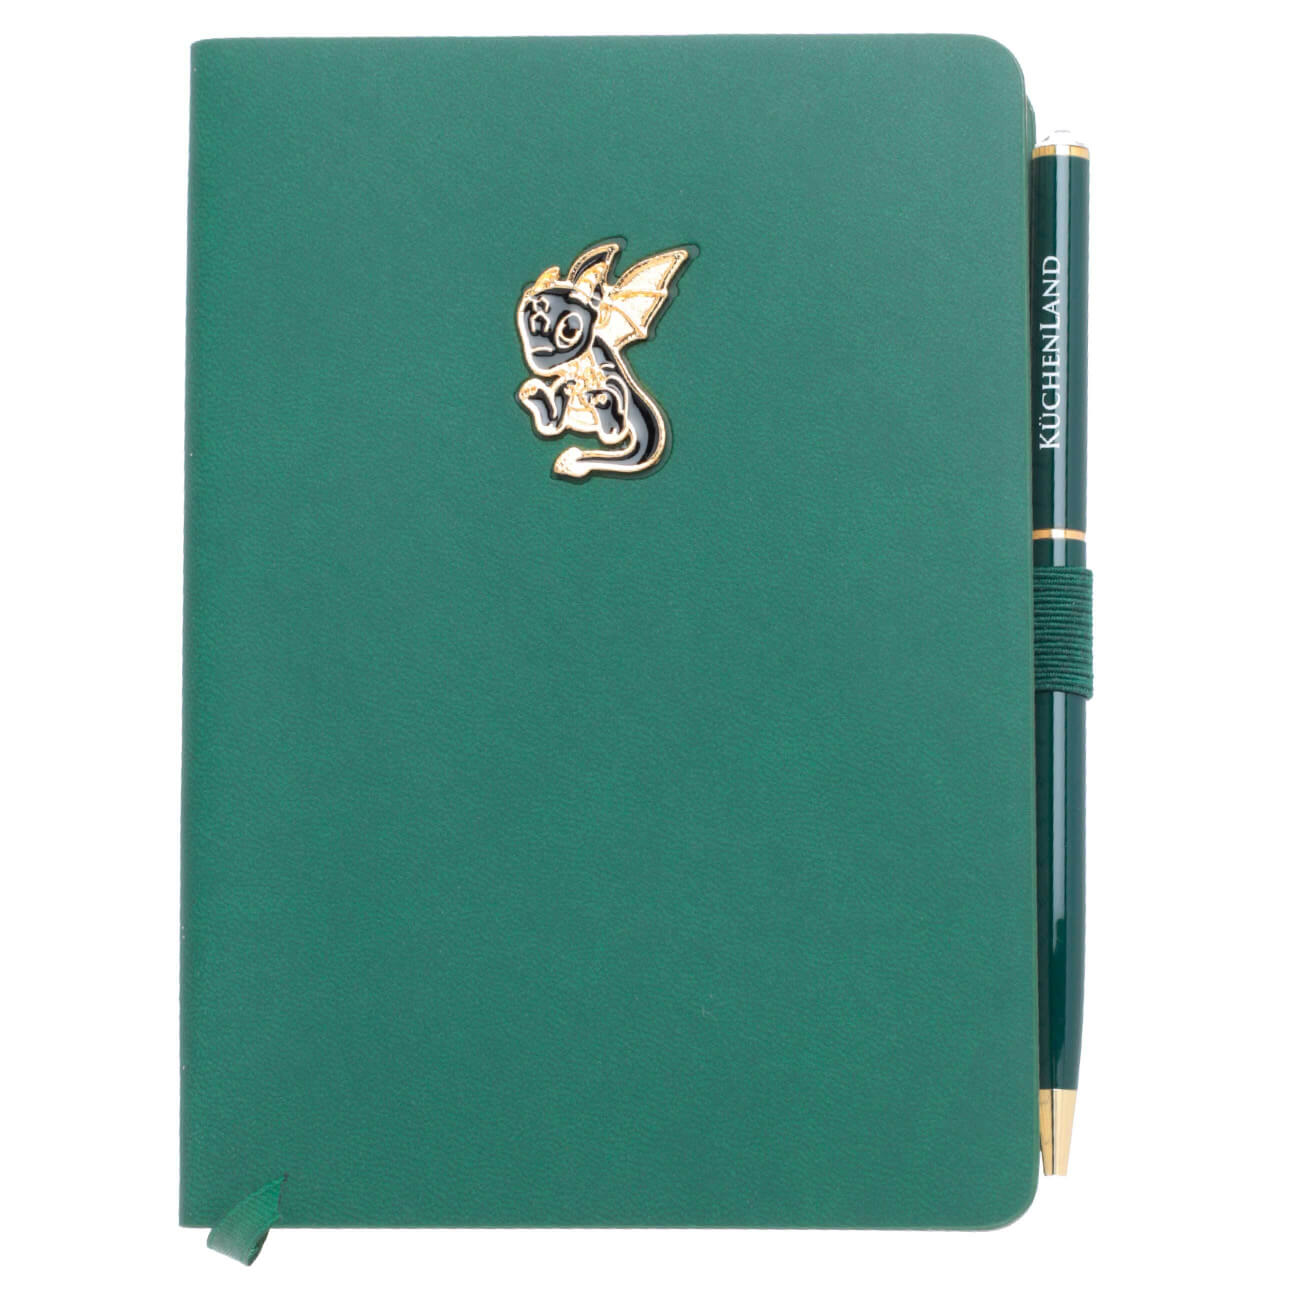 Блокнот для записей, 15х11 см, с ручкой, полиуретан, зеленый, Дракон с крыльями, Dragon spyro journal mustard блокнот s